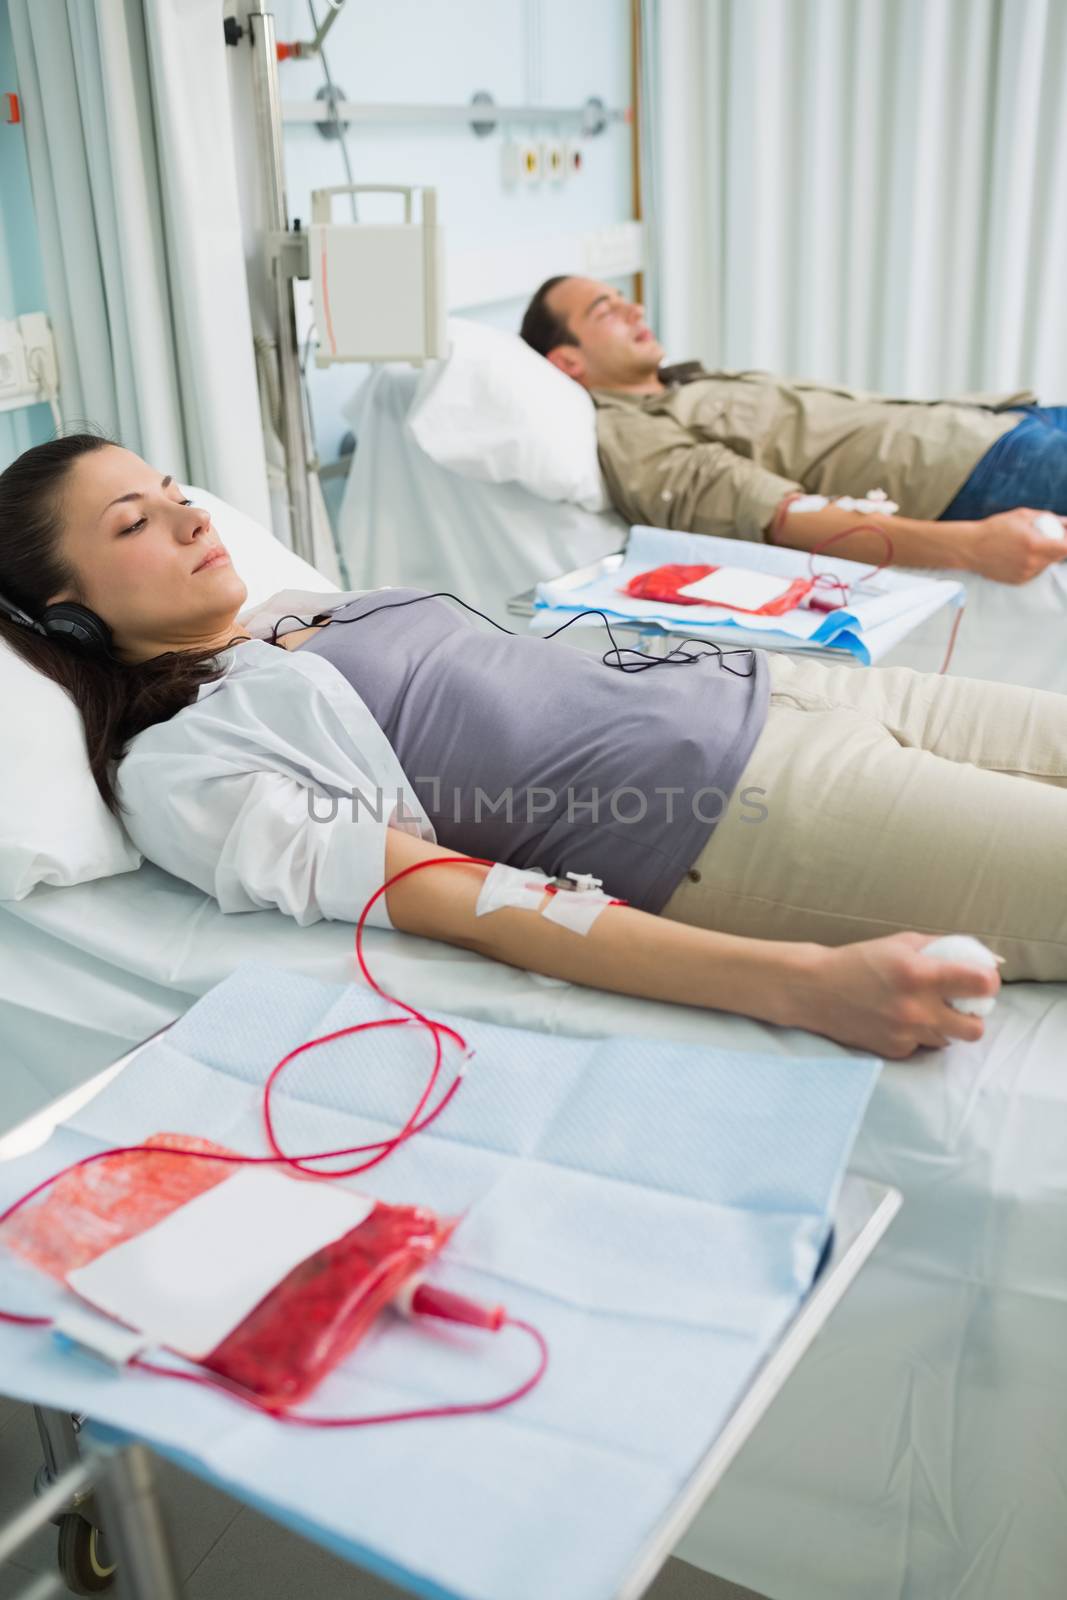 Transfused patients being sleepy in hospital ward